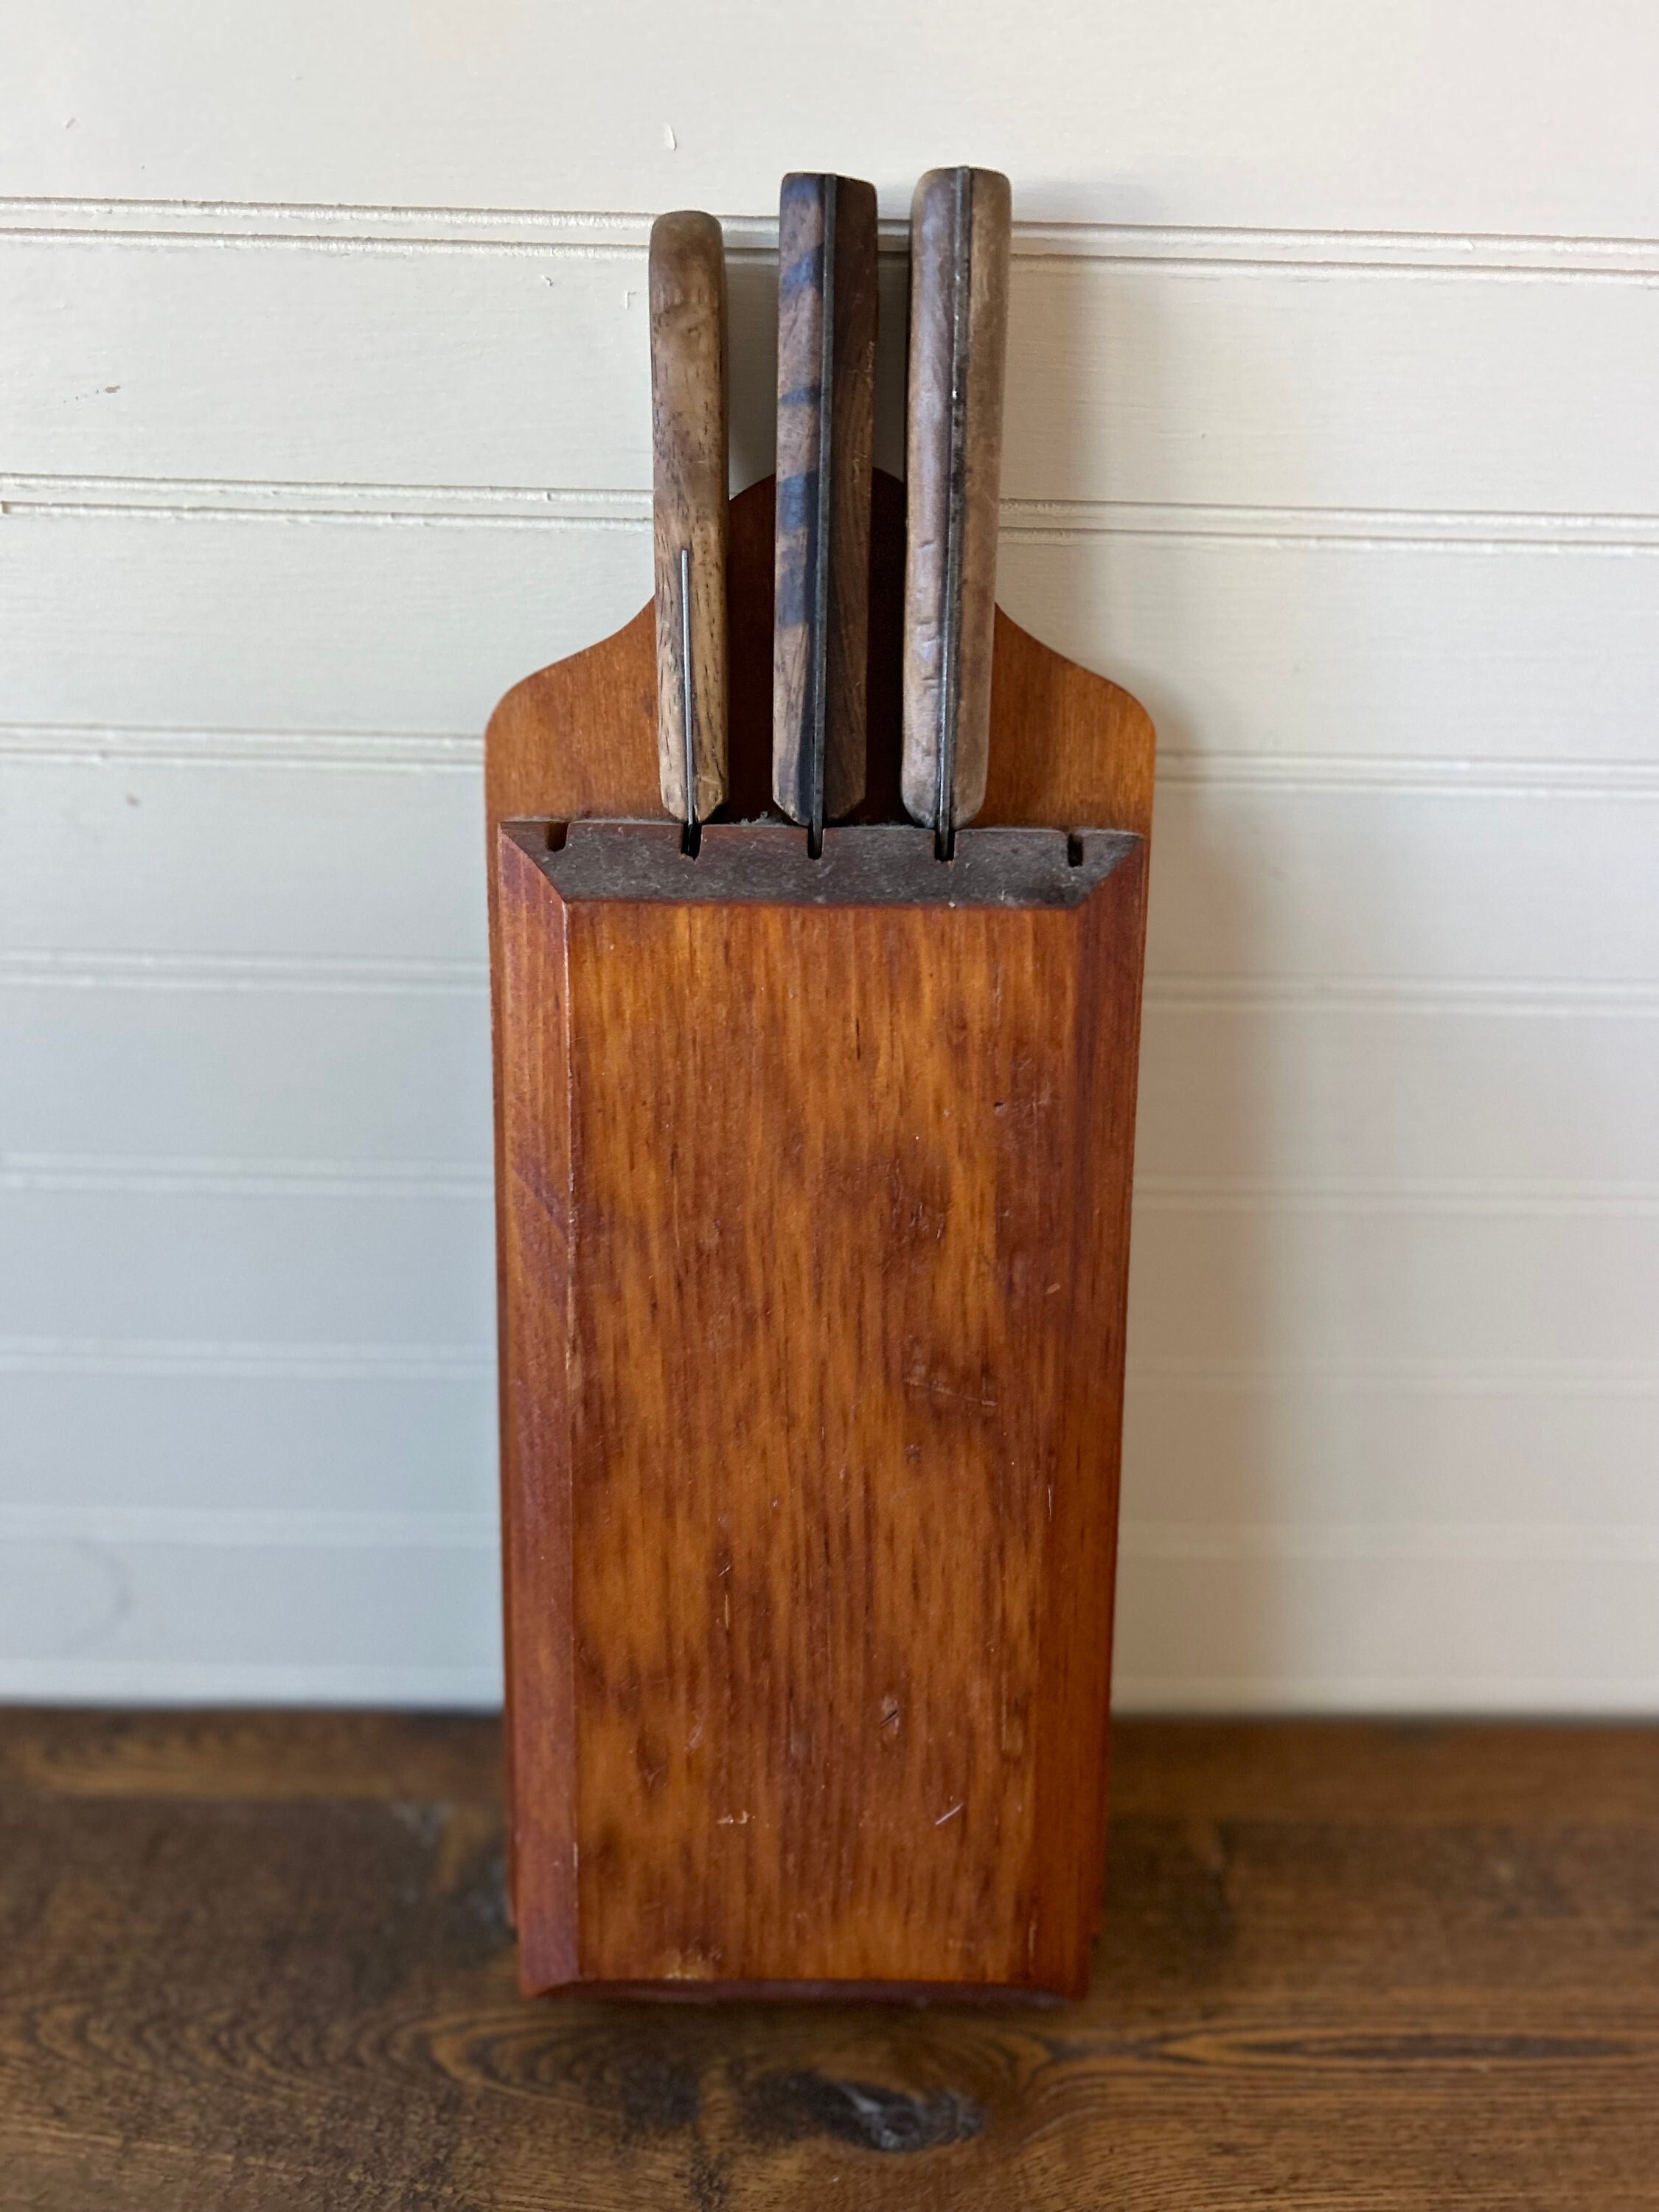 Decorative Vintage Knife Holder Knife Block Made of Old Wood